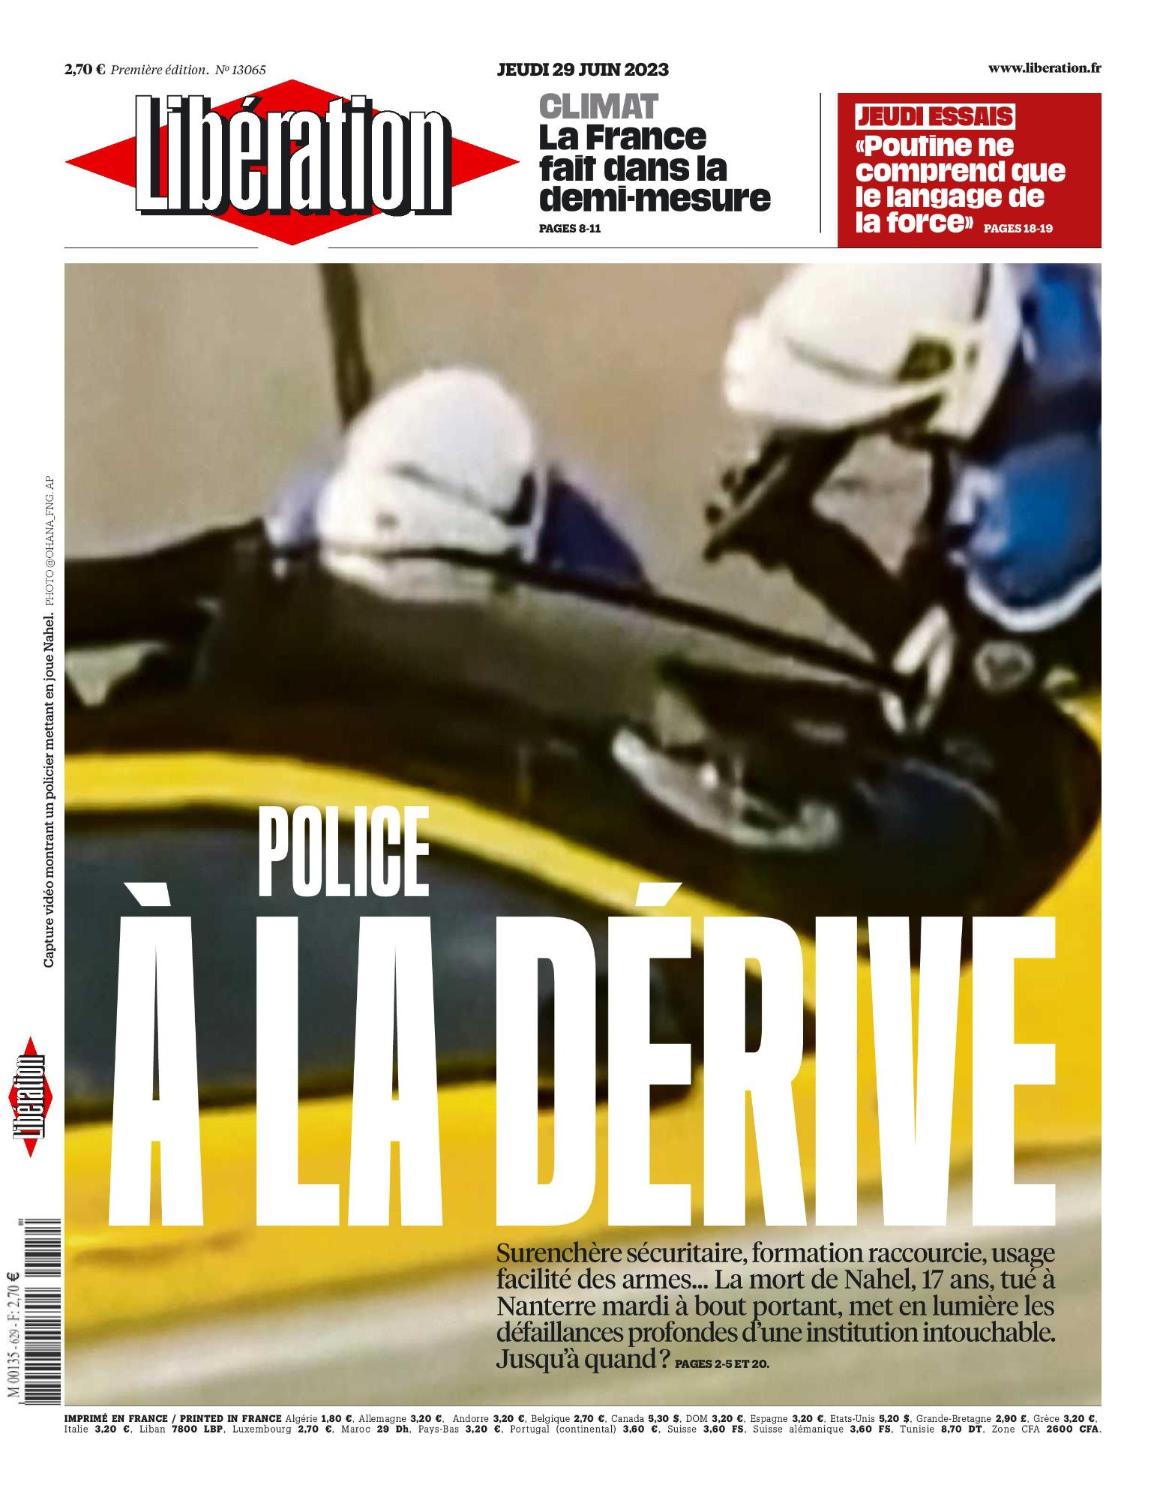 Καίγεται η Γαλλία για τη δολοφονία 17χρονου από αστυνομικό - Το εξώφυλλο της Liberation με τον πυροβολισμό